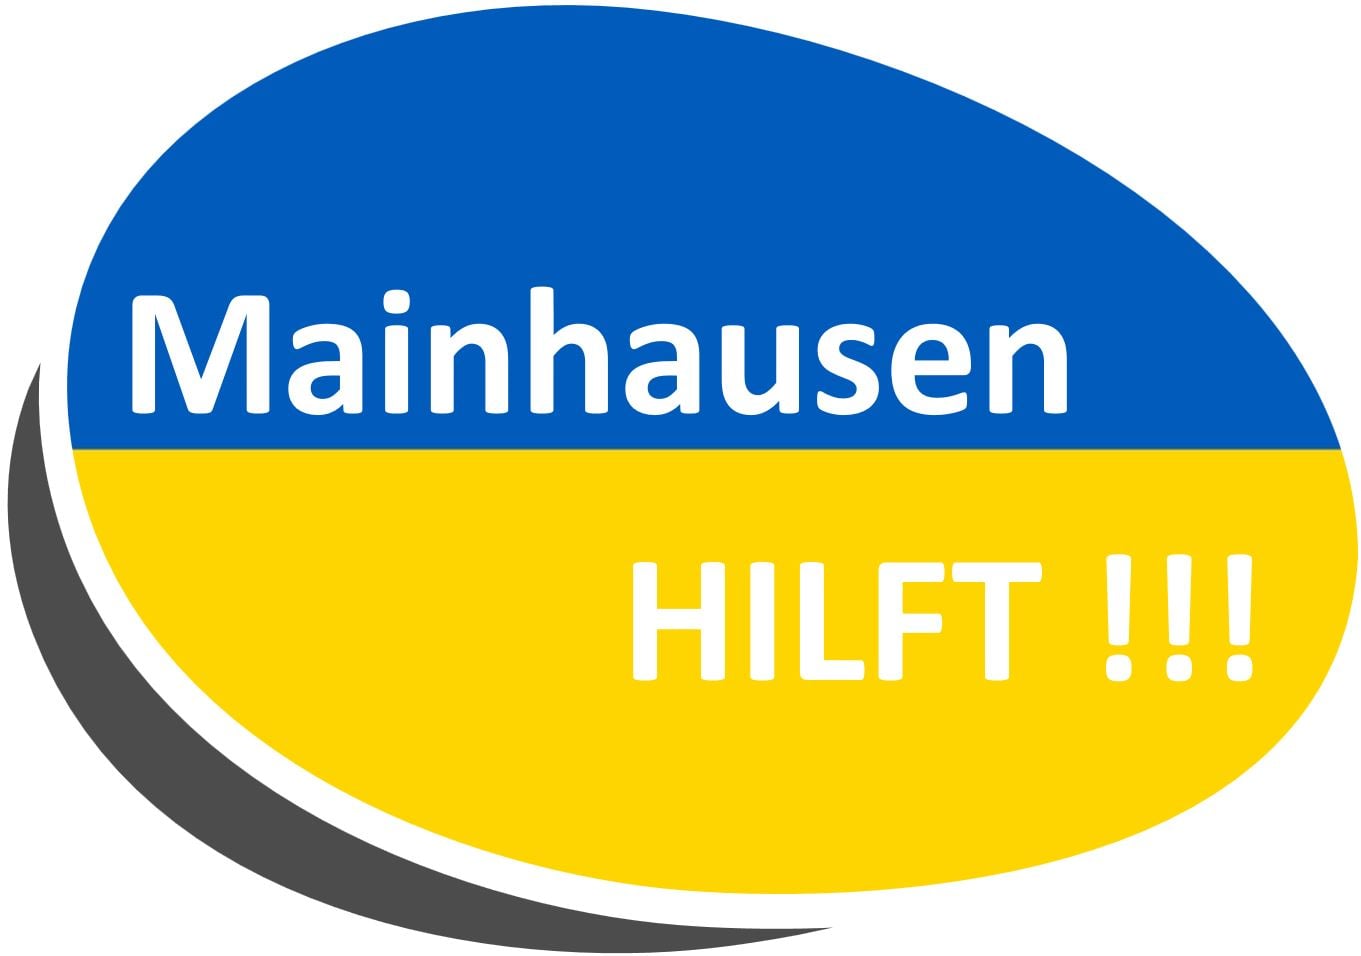 Mainhausen_Hilft (c) Gemeinde Mainhausen